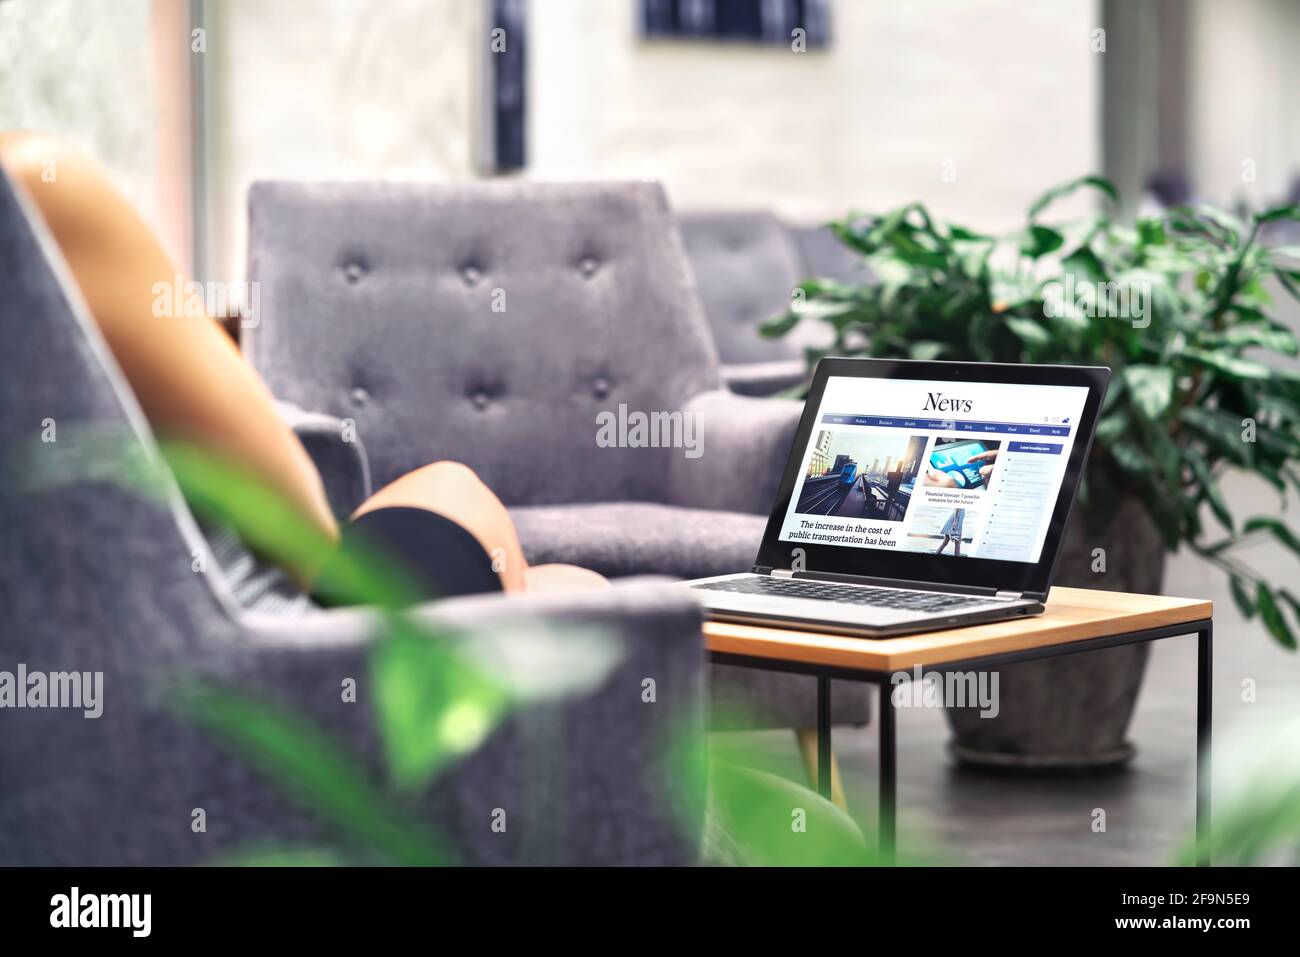 Laptop mit Nachrichten-Website auf dem Bildschirm auf dem Tisch im Business Office, in der Corporate Lounge oder in der Hotellobby. Wireless WiFi des Unternehmens. Modernes Café oder Arbeitsplatz. Stockfoto